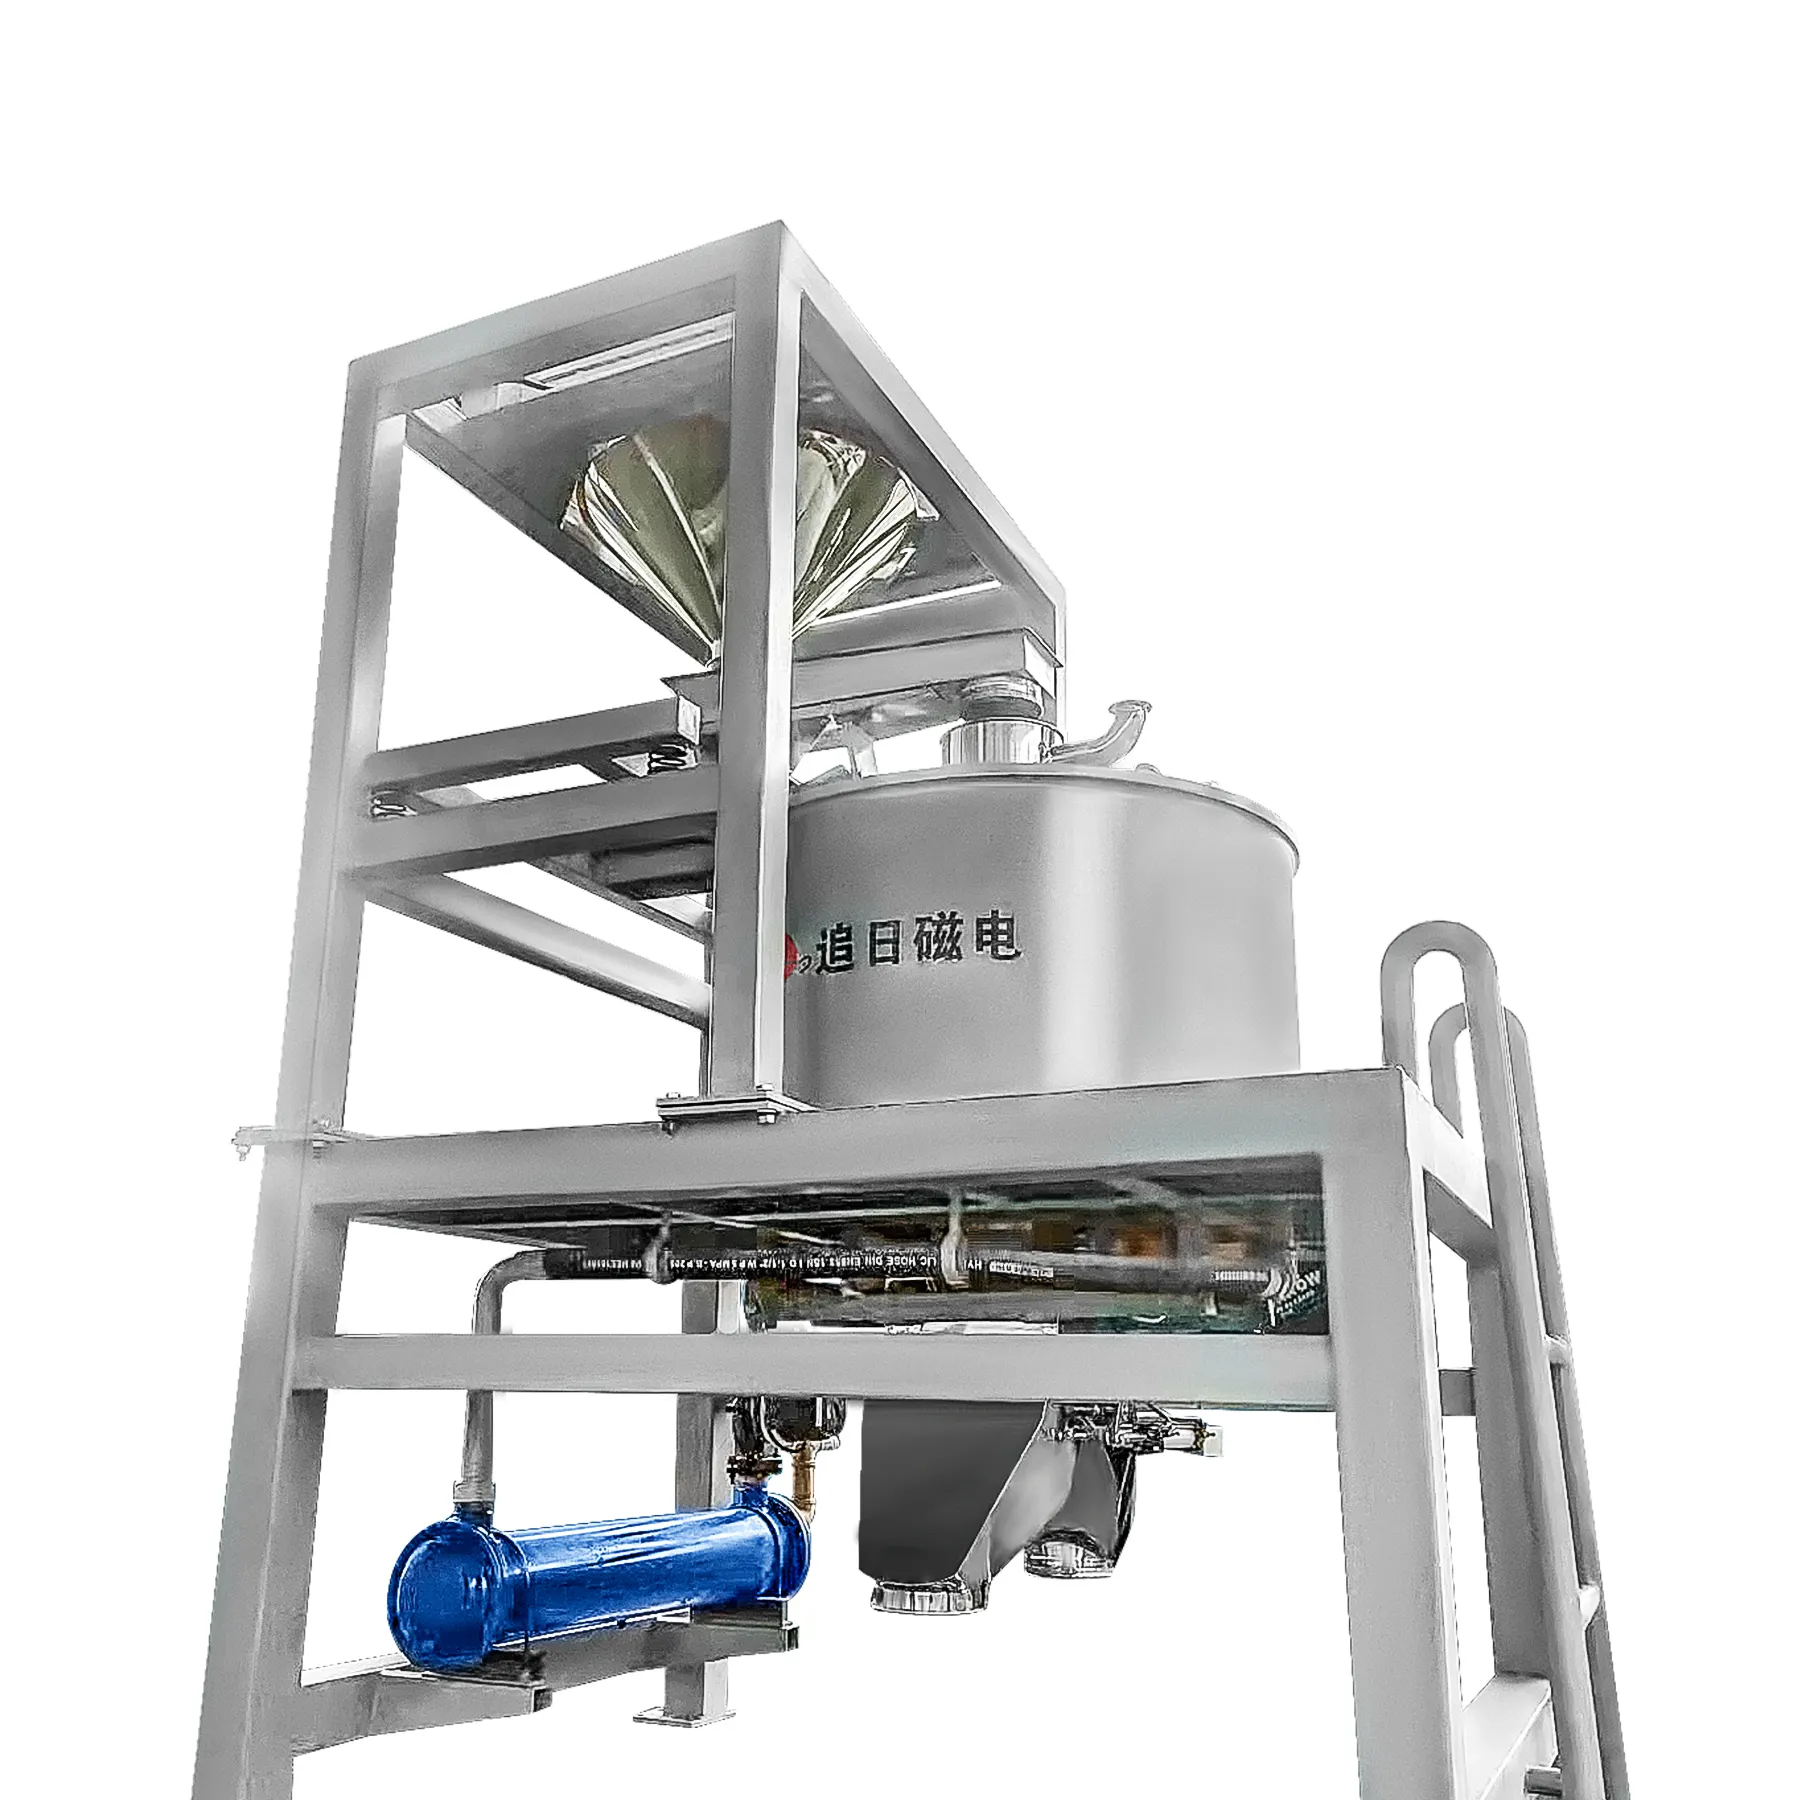 Mesin pemrosesan yang disediakan Drum basah produk panas kacang ginjal hitam merah 2020 putih 50 sistem bersih sendiri pemisah magnetik